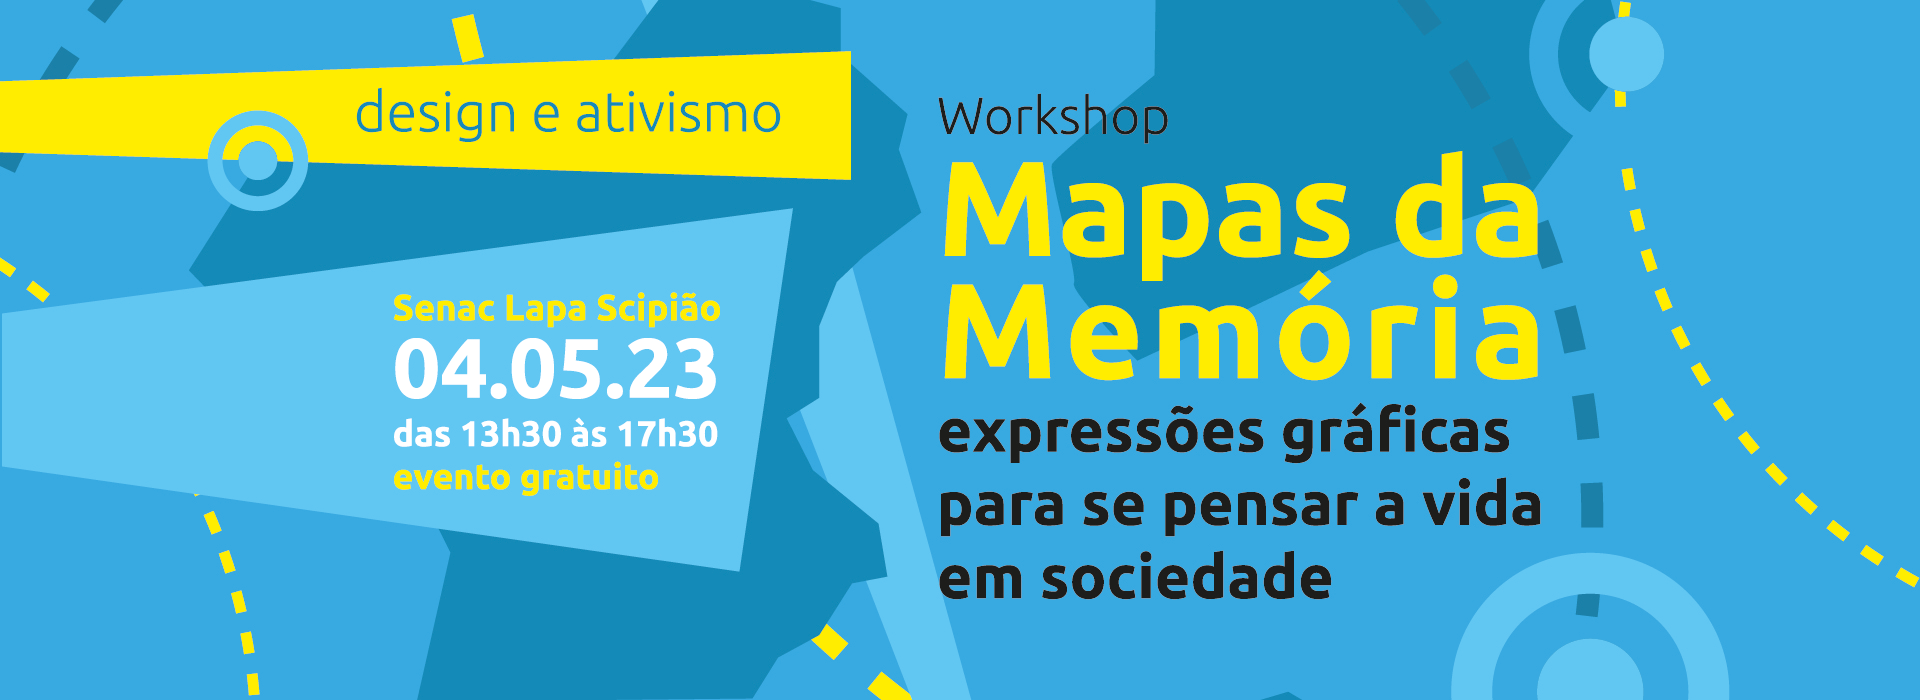 Workshop - Mapas da memória